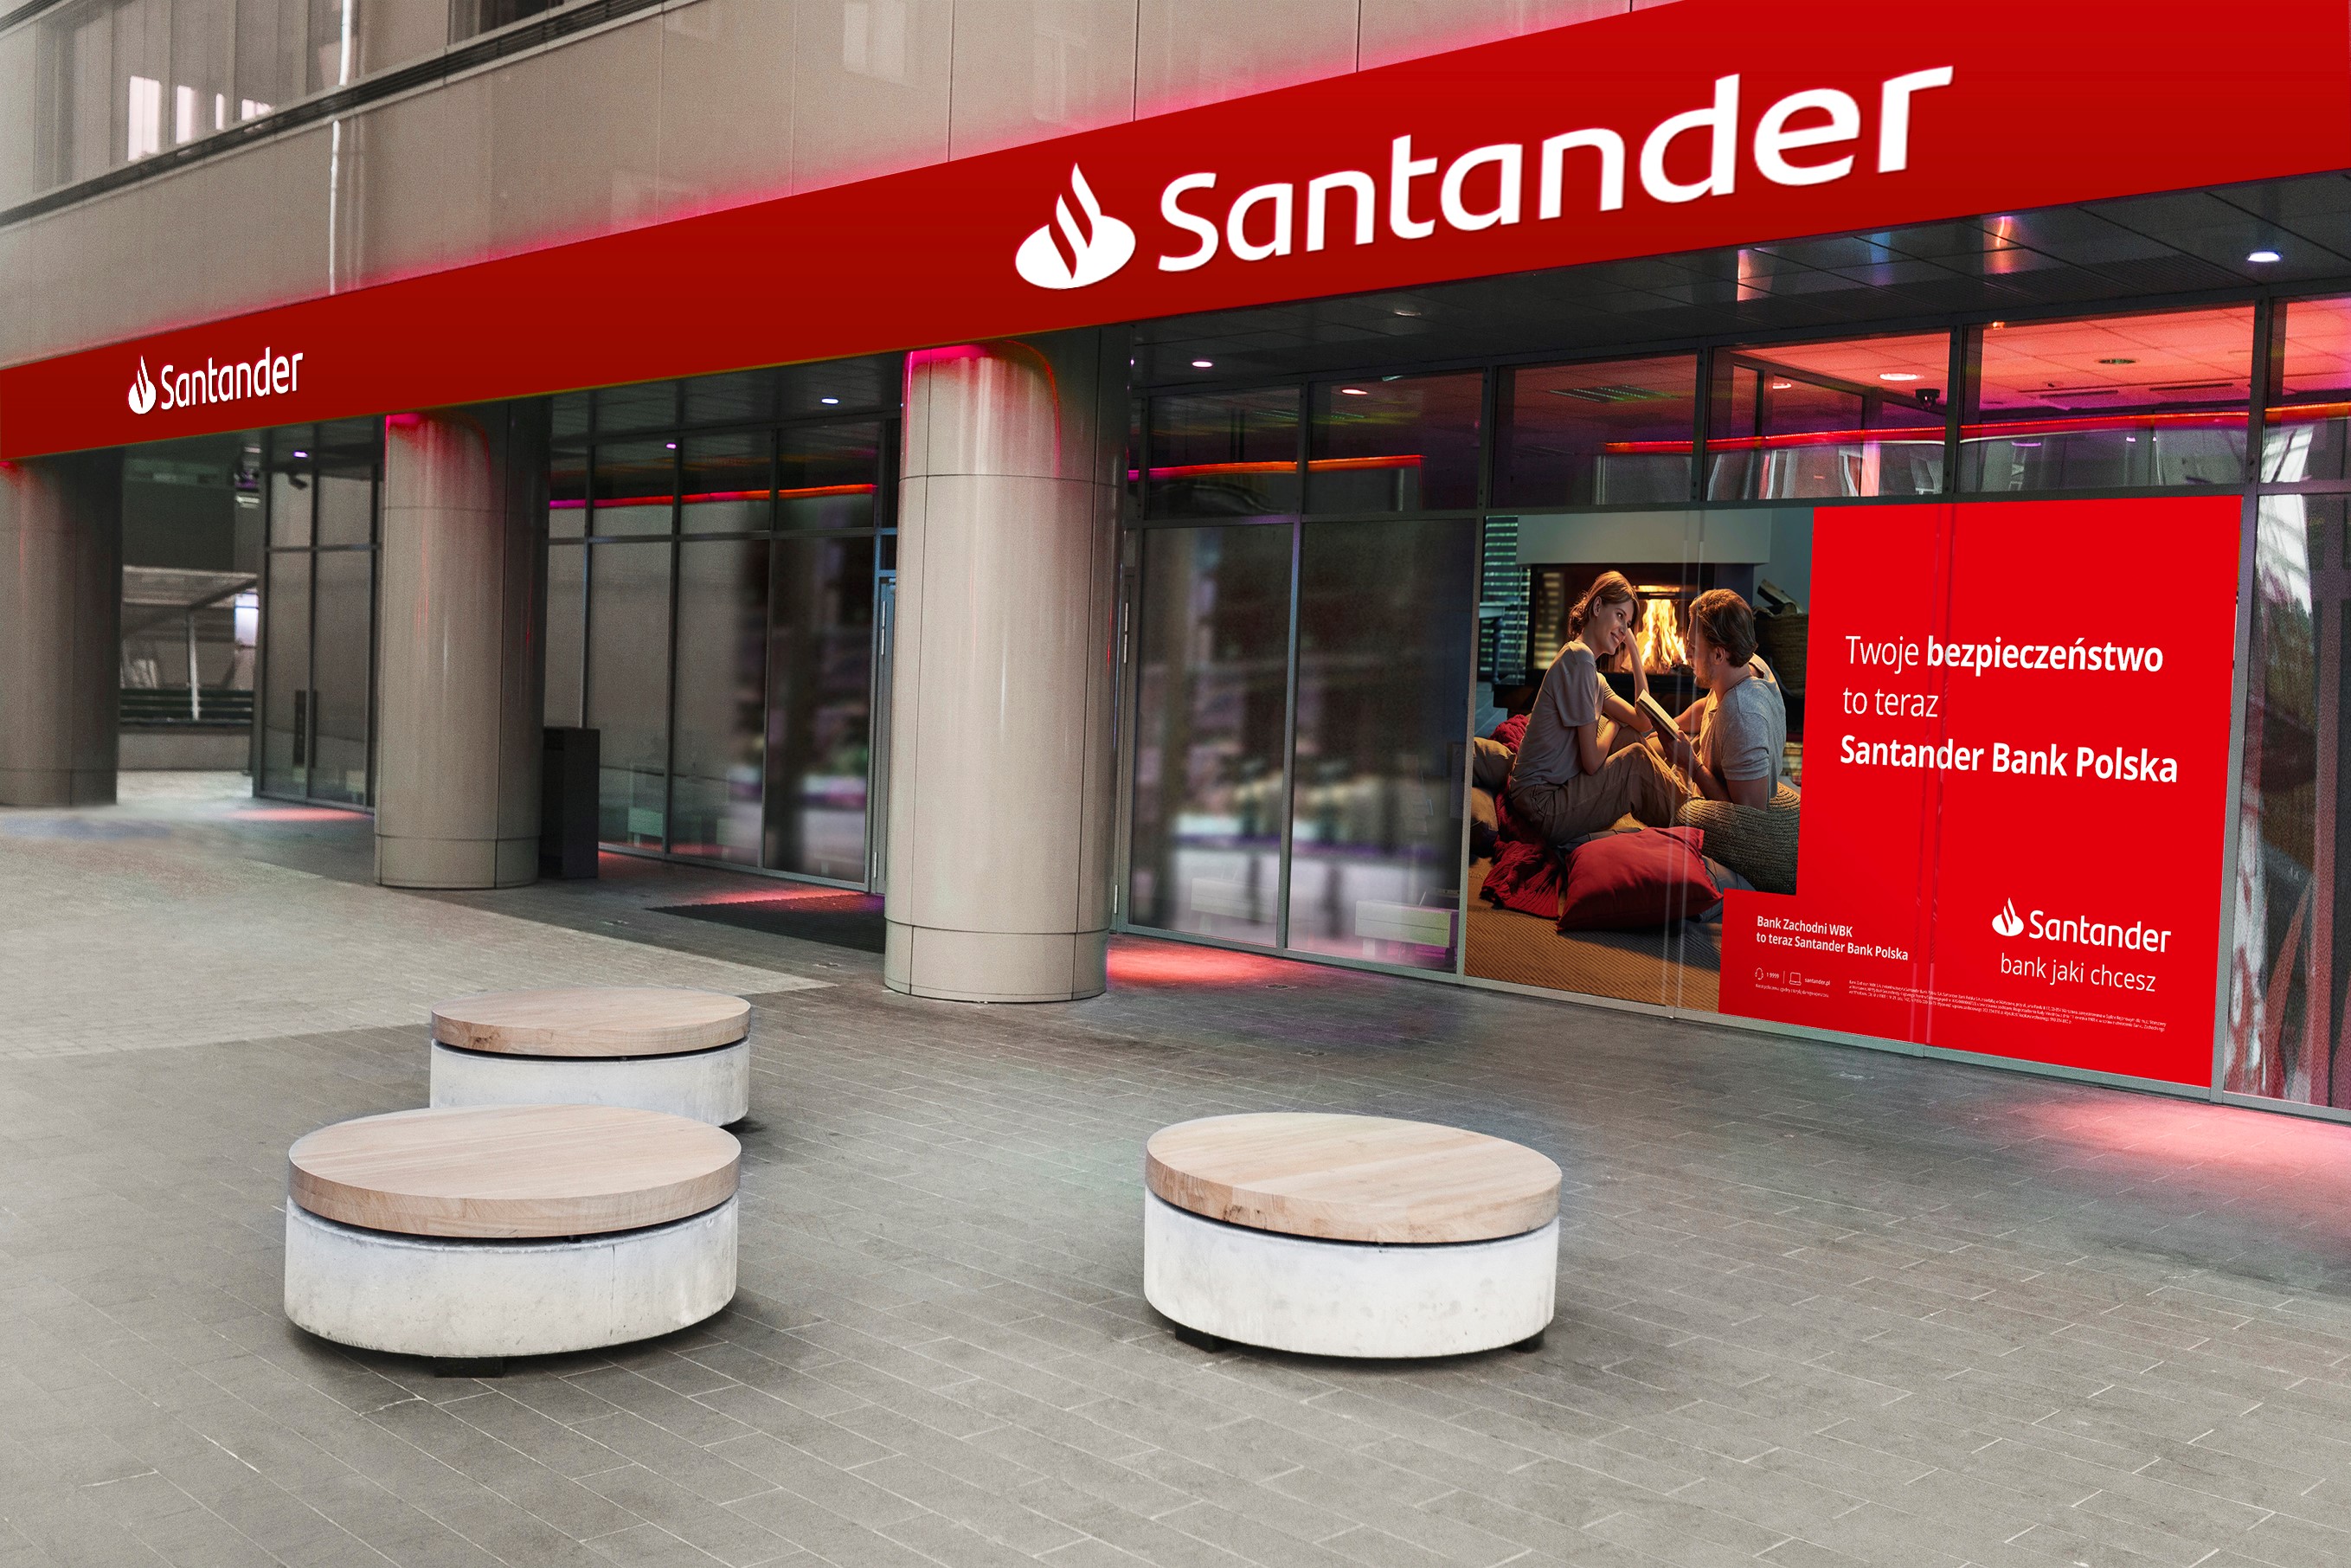 Natychmiastowe przelewy w euro od KIR. Santander Bank Polska rozpoczyna pilotaż usługi